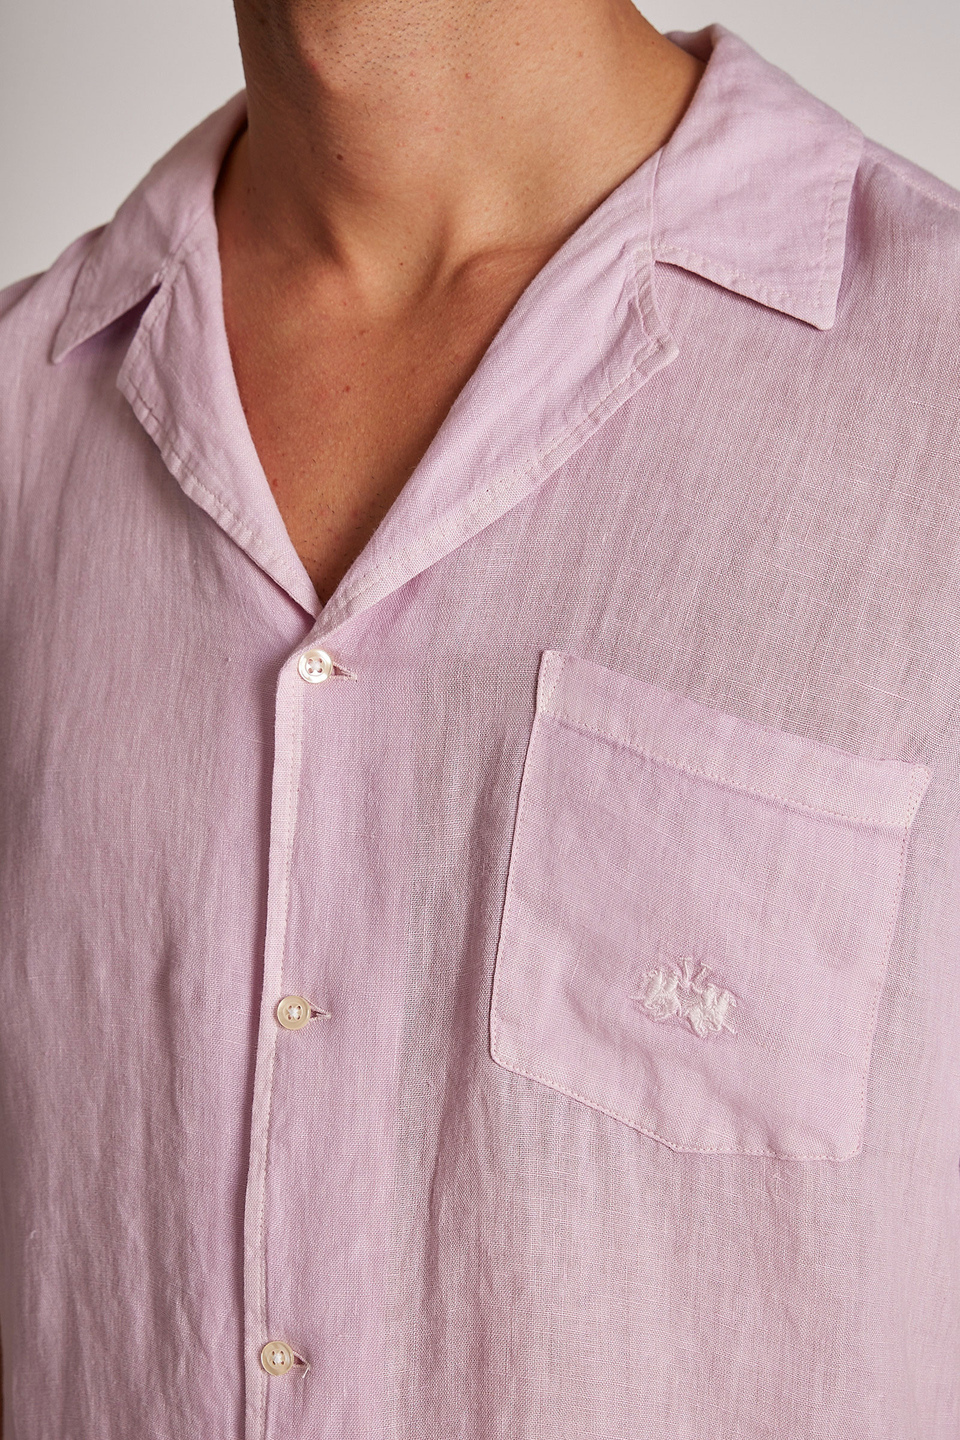 Camisa de hombre de lino, manga corta, corte regular | La Martina - Official Online Shop